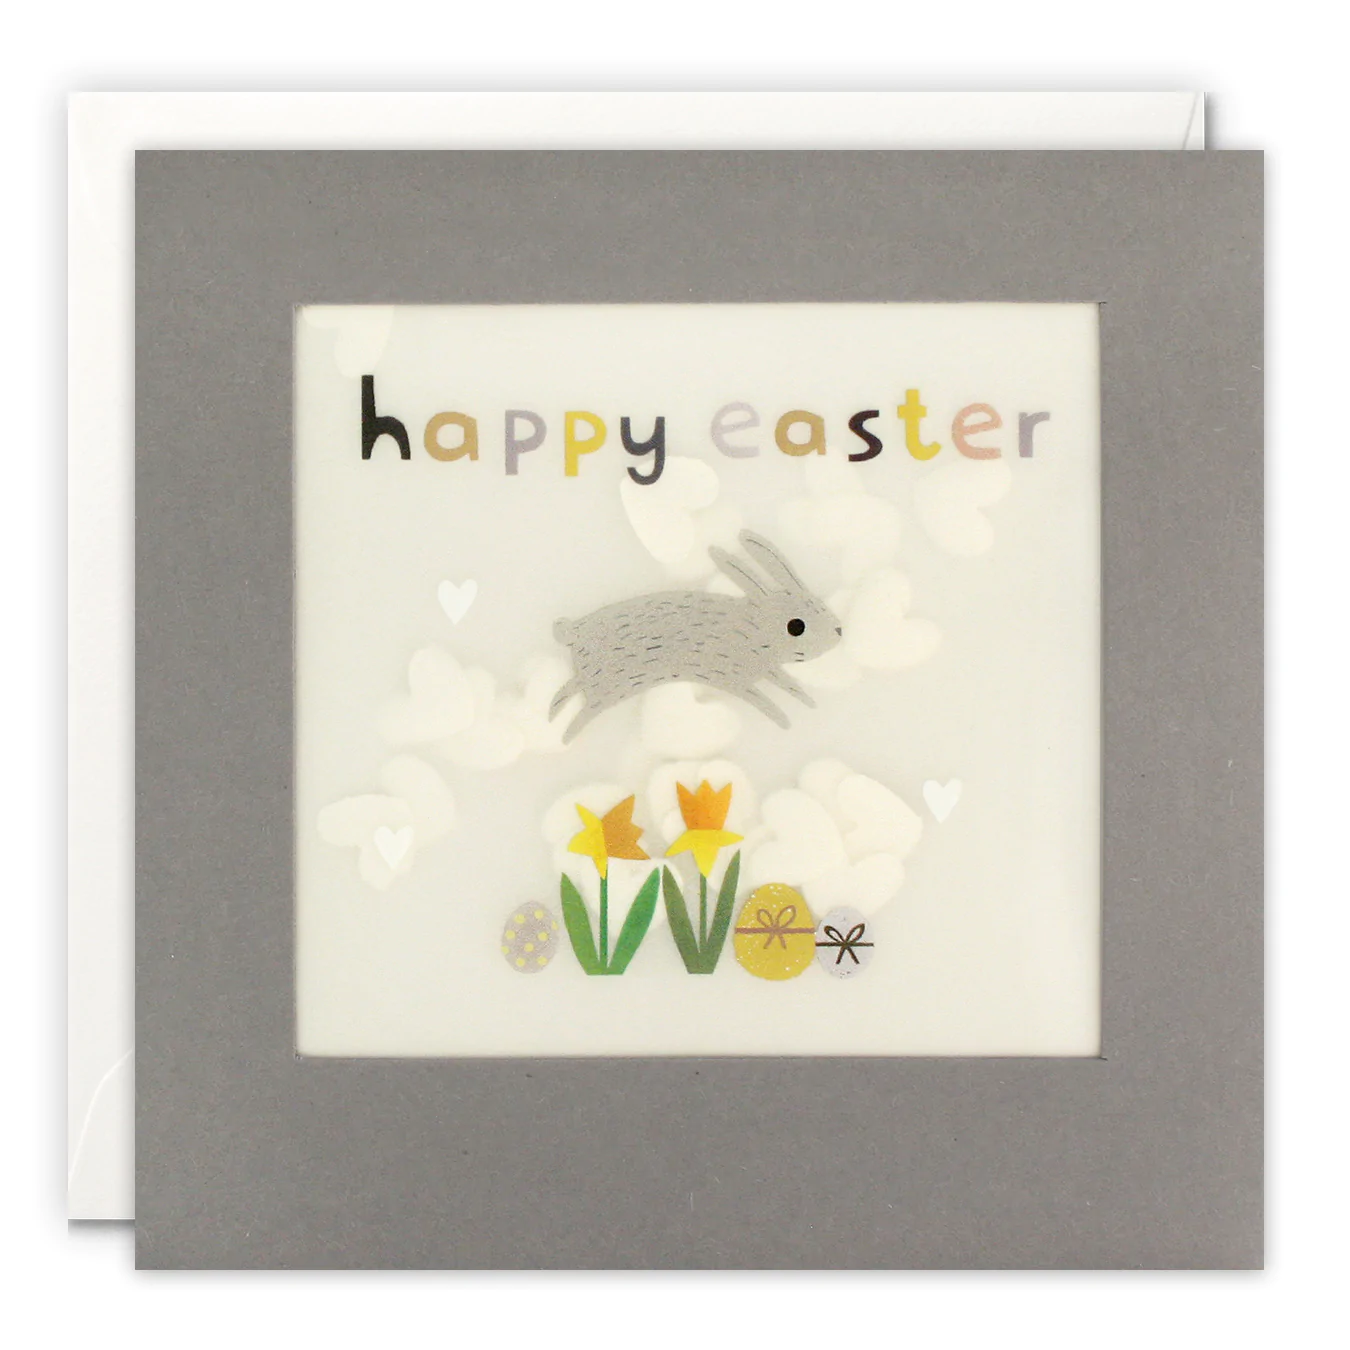 happy easter bunny shakies card by James Ellis